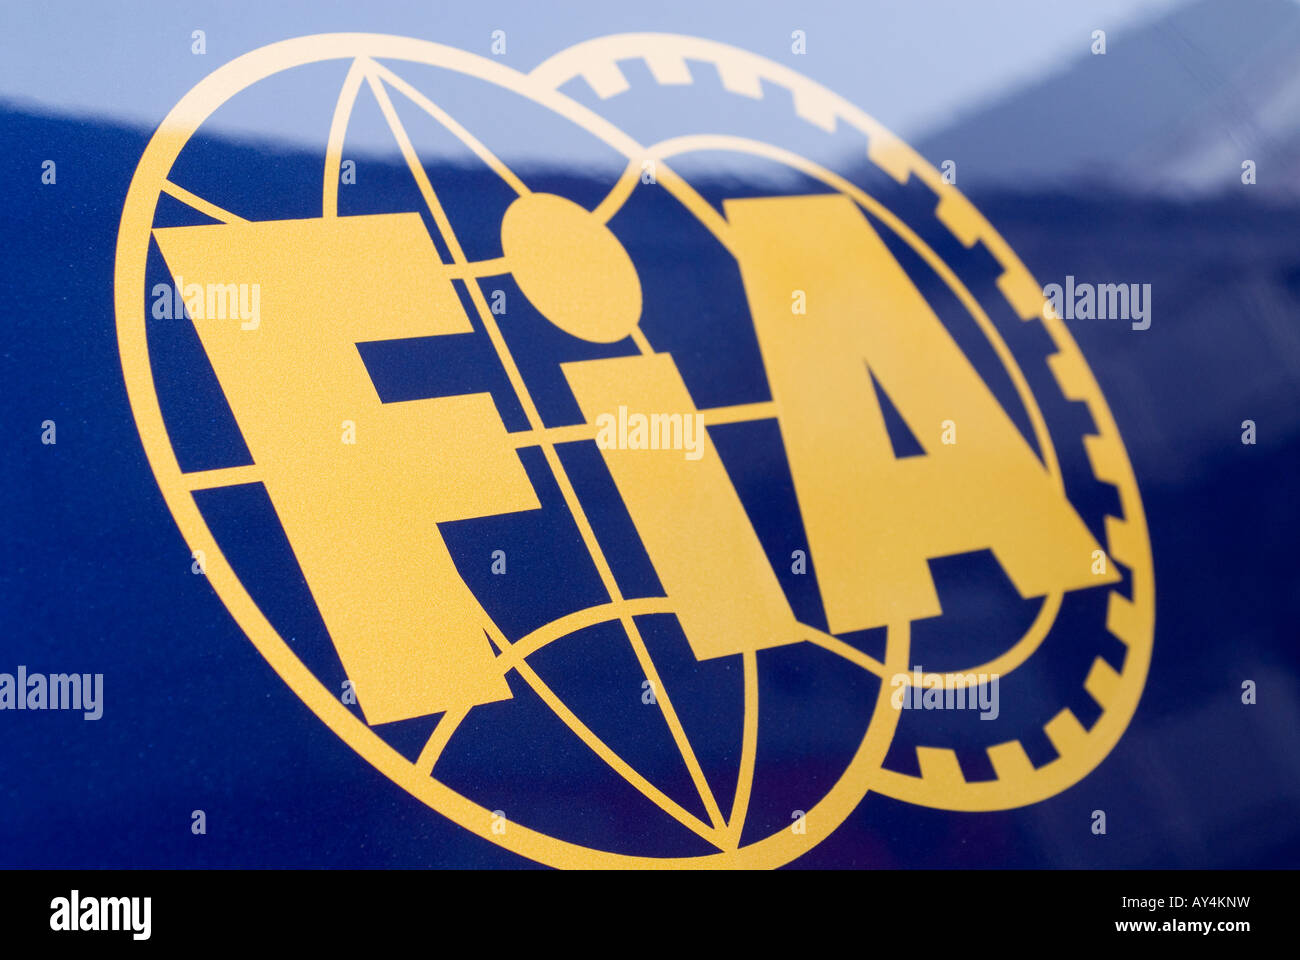 FIA logo Stock Photo